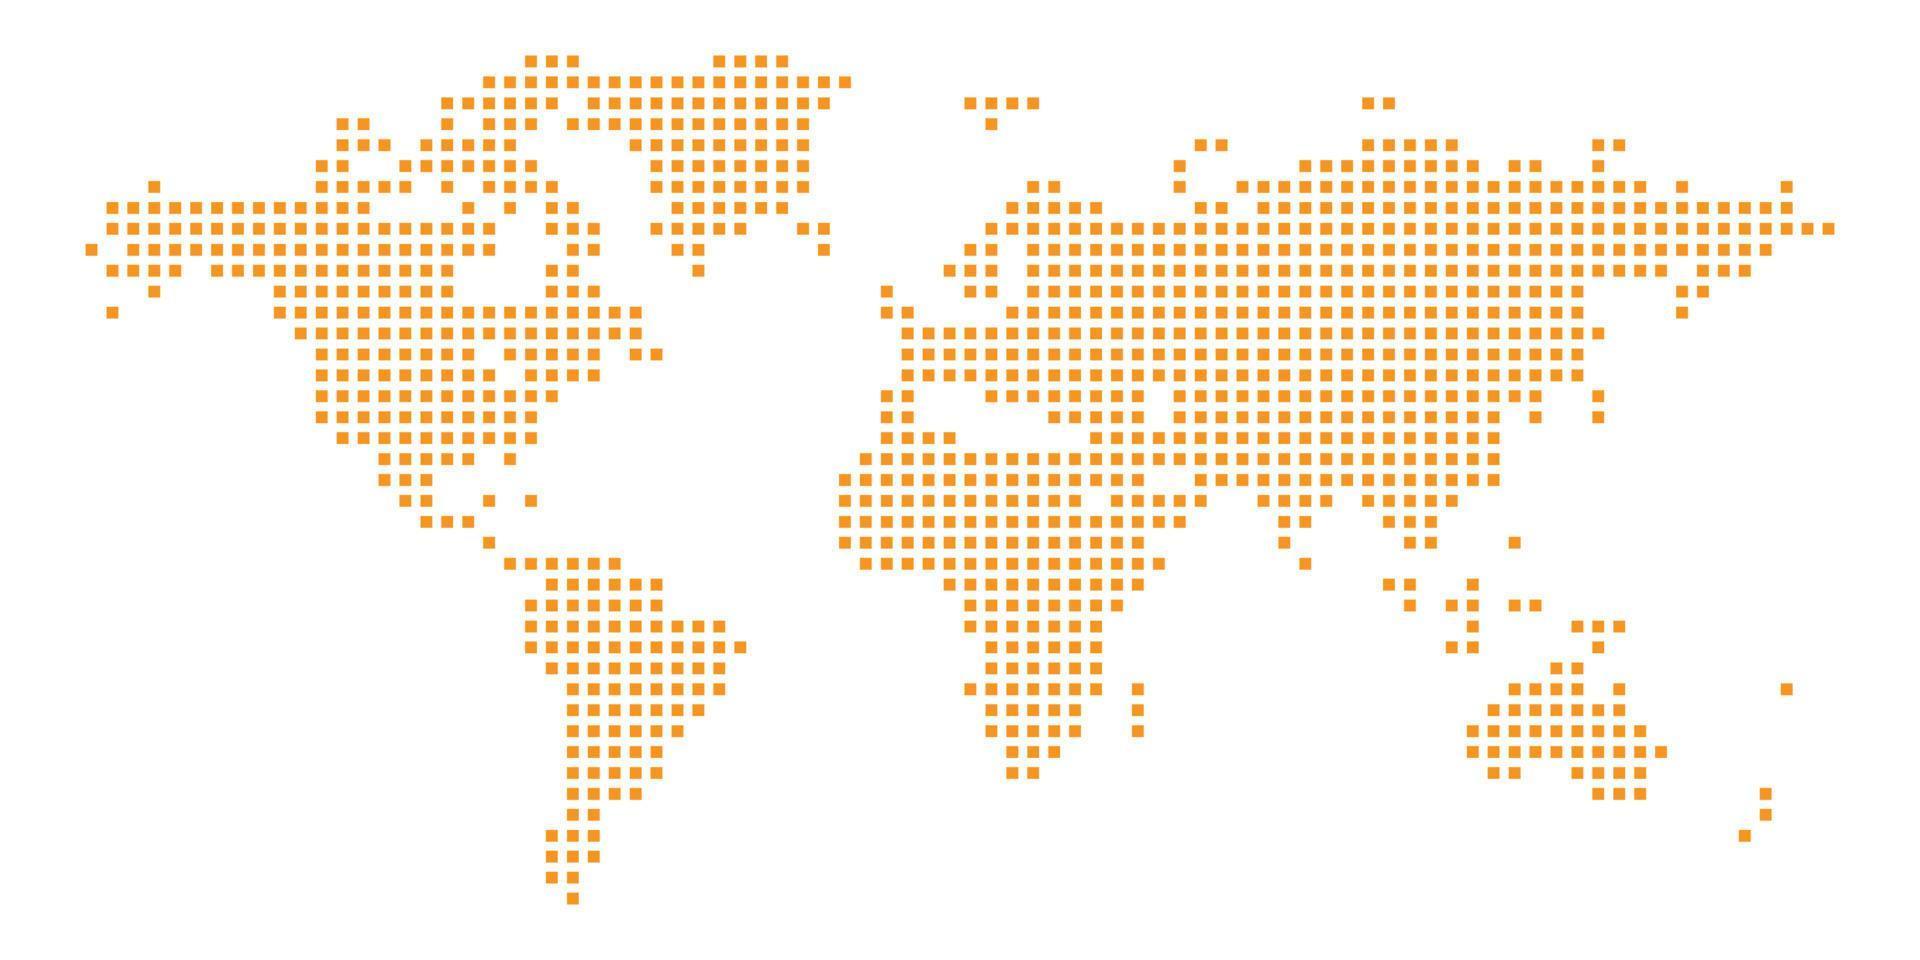 wereldkaart op witte achtergrond. wereldkaartsjabloon met continenten, Noord- en Zuid-Amerika, Europa en Azië, Afrika en Australië vector